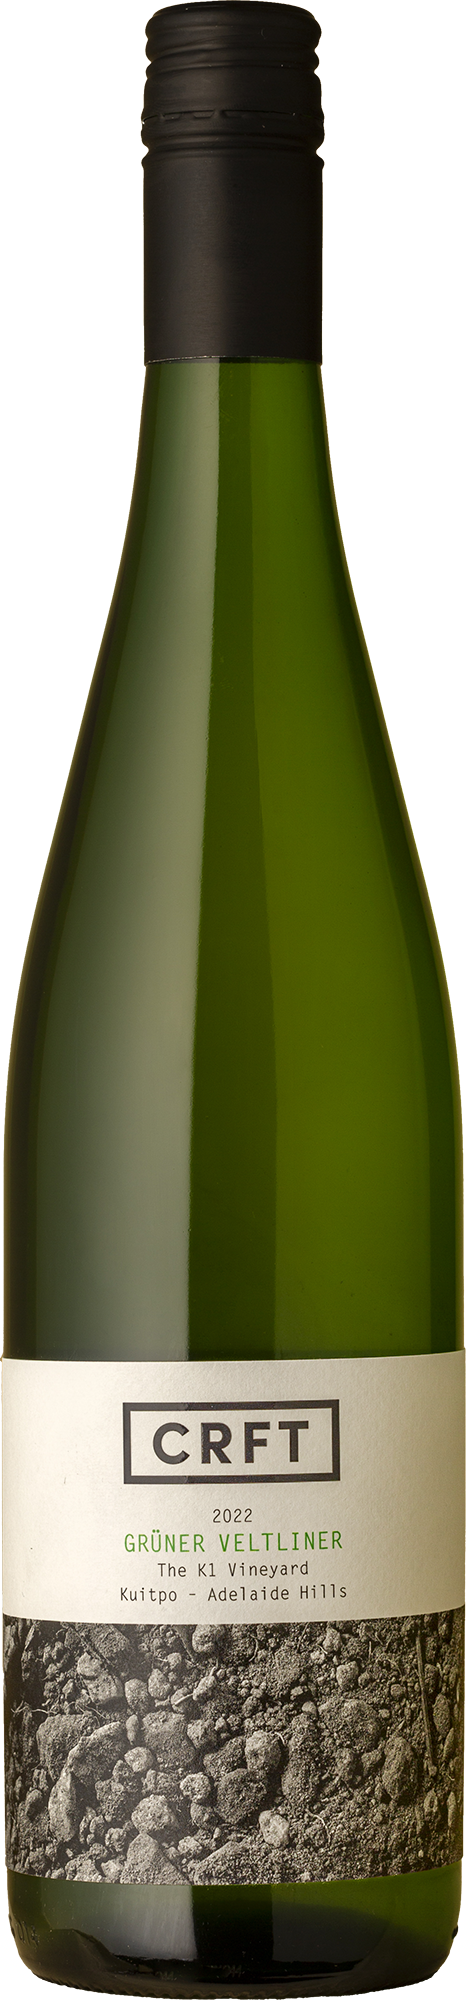 CRFT - The K1 Vineyard Grüner Veltliner 2022 White Wine